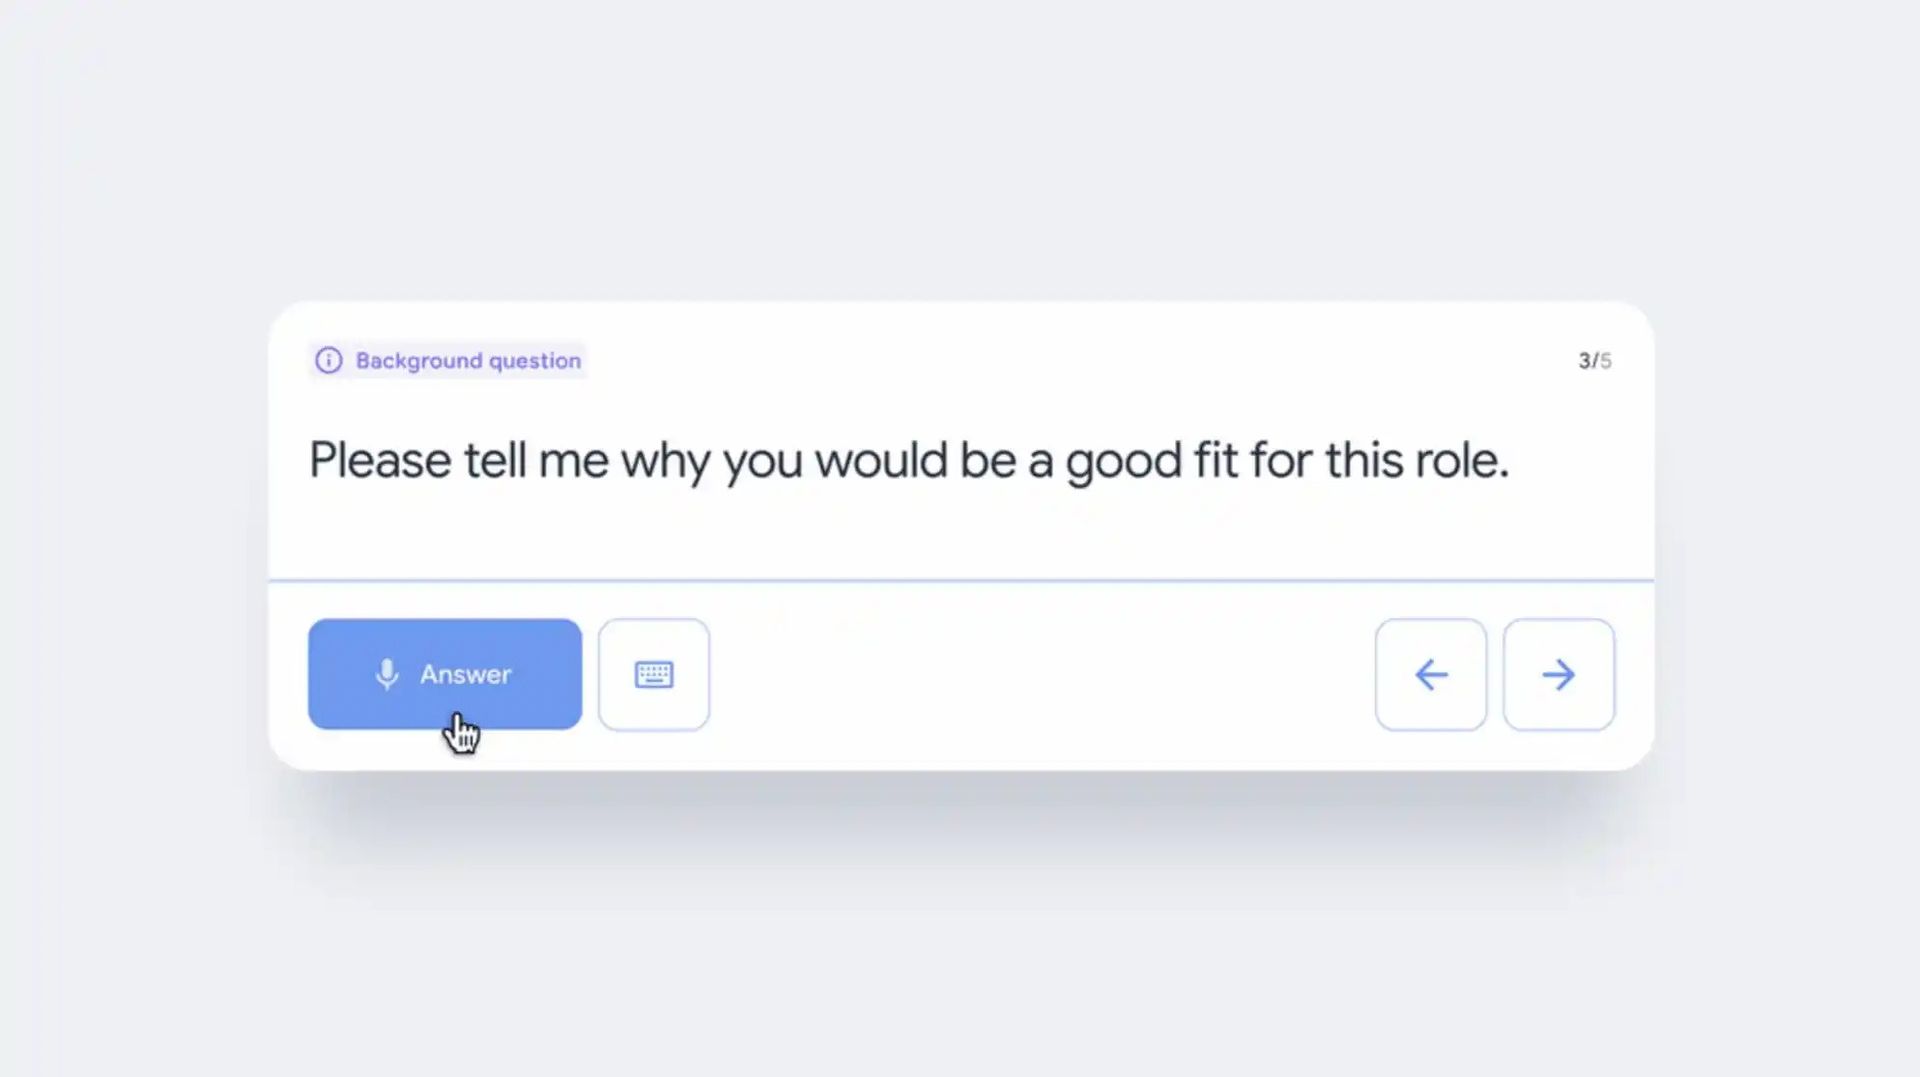 Se você estiver nervoso antes de uma entrevista de emprego, a nova ferramenta de IA chamada Google Interview Warmup ajudará você a praticar com antecedência.  O Google agora tem uma ferramenta para auxiliar os candidatos na prática de entrevistas de emprego.  É verdade que as entrevistas de emprego podem ser estressantes.  Você pode praticar e estar mais preparado antes de ir para uma entrevista graças à nova ferramenta do Google.